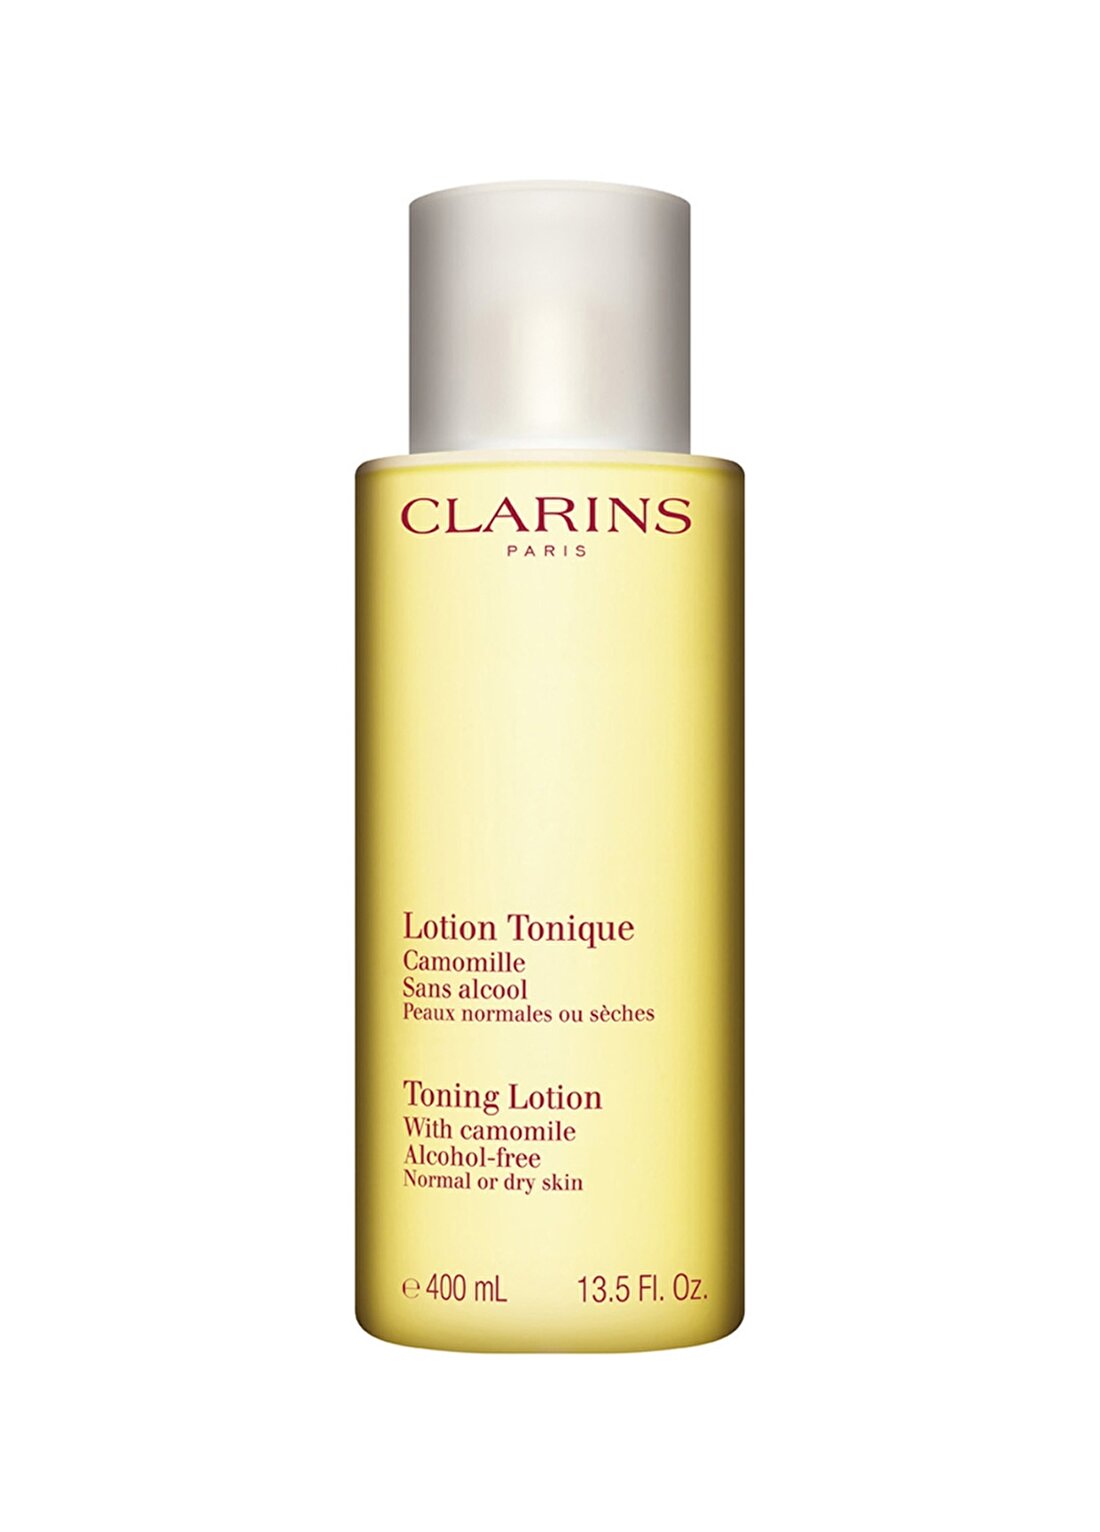 Clarins Toning Lotion Normal Or Dry Skin Tonik